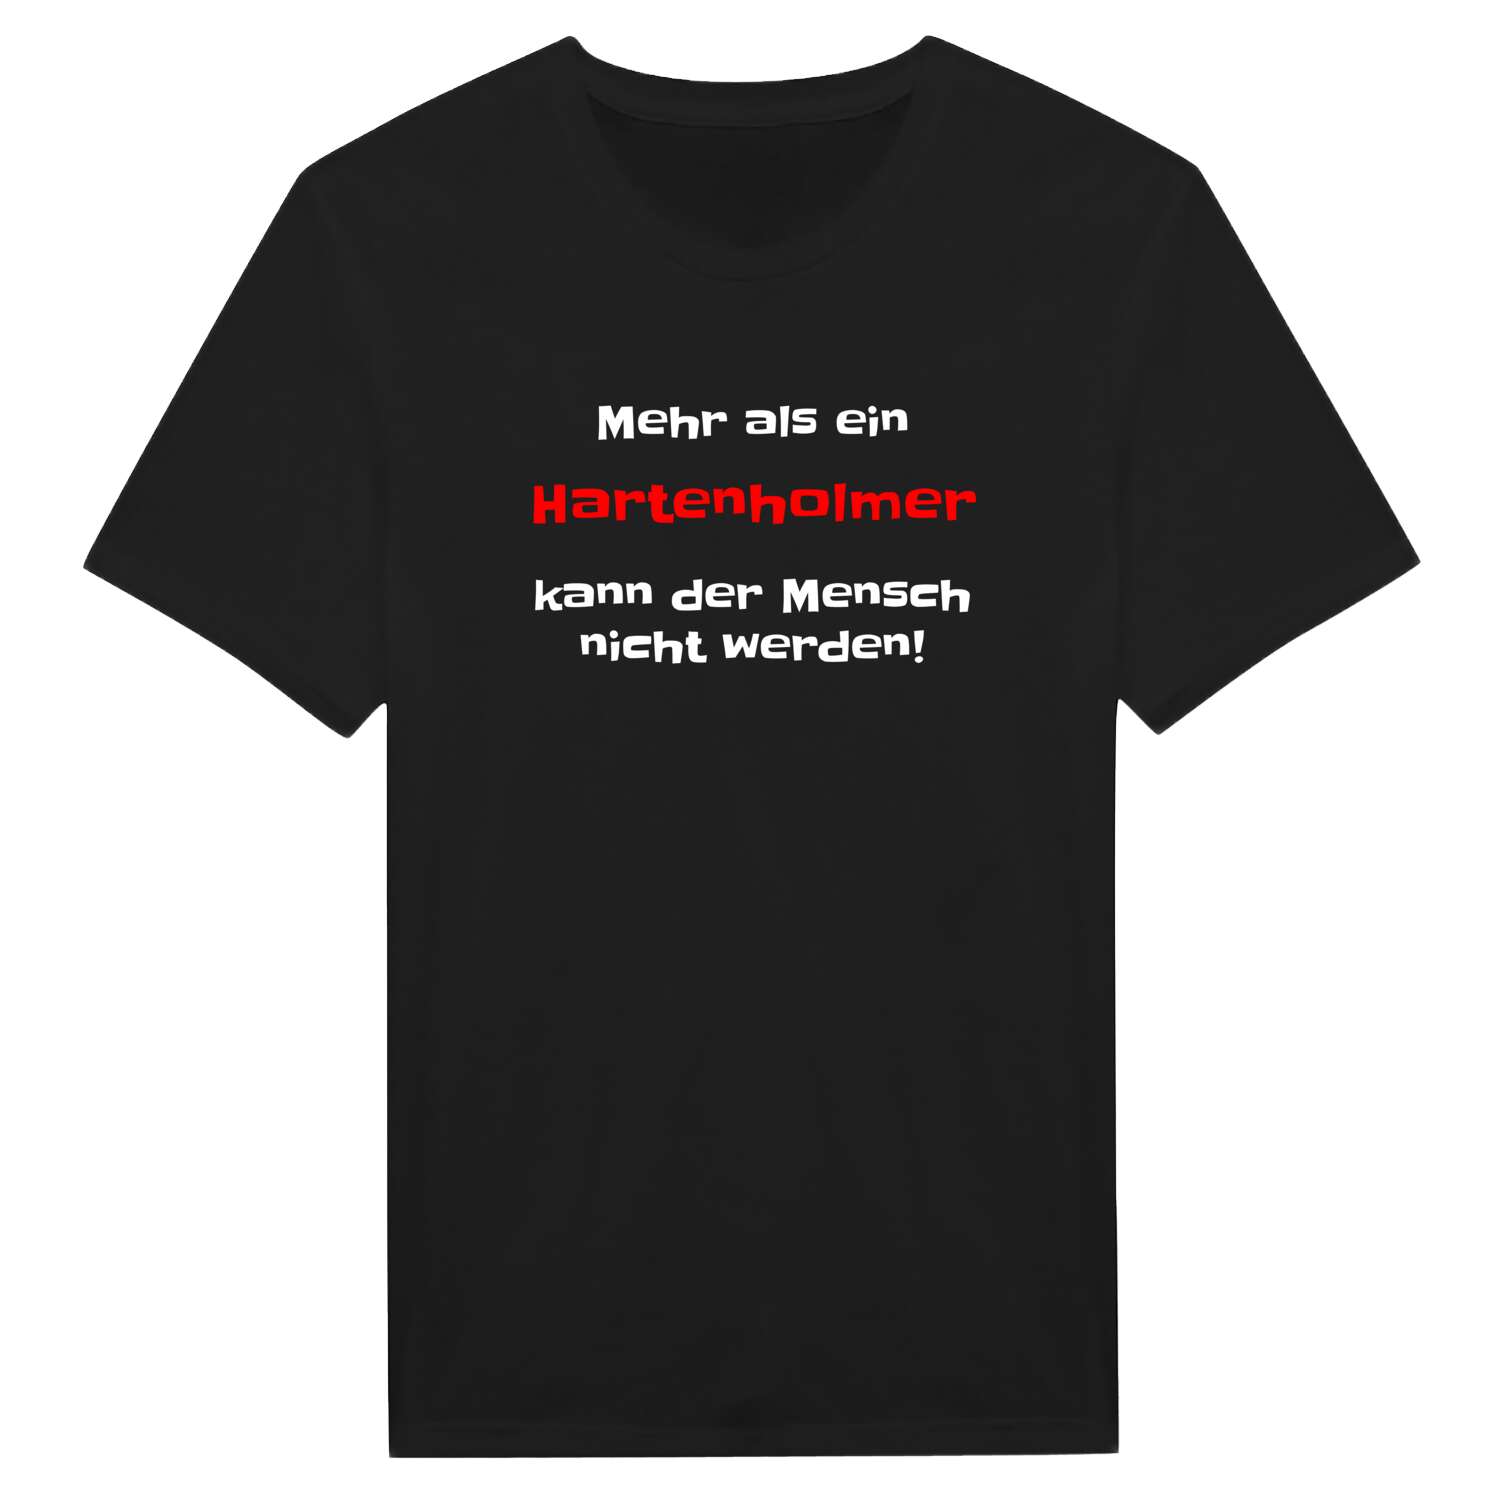 Hartenholm T-Shirt »Mehr als ein«